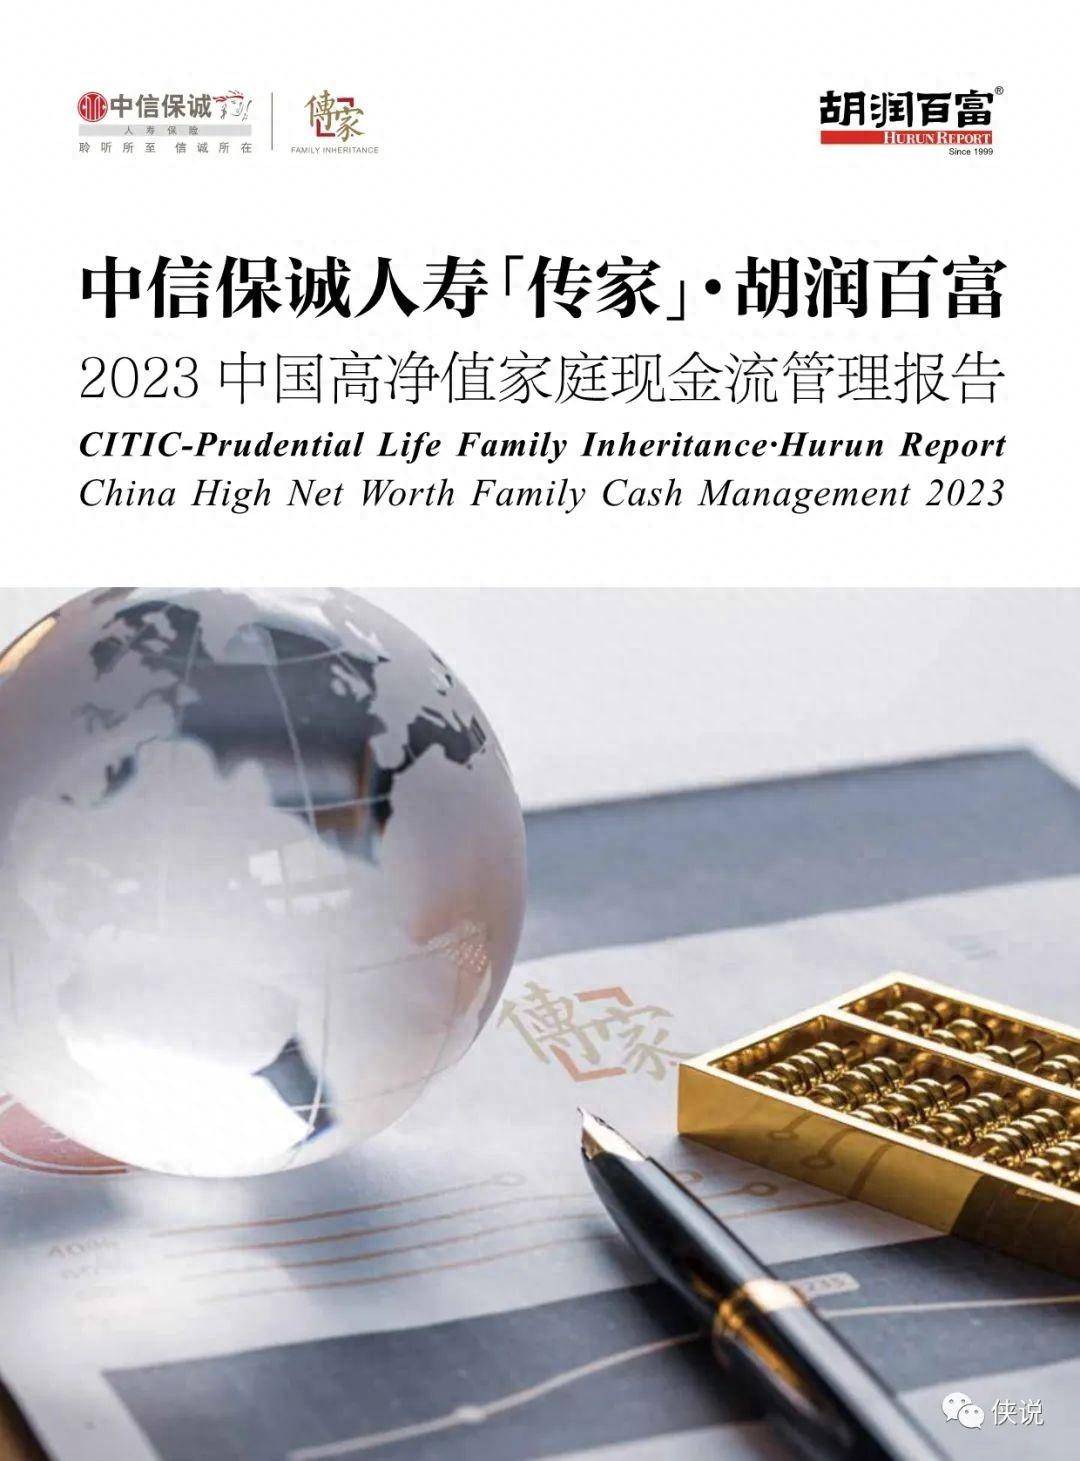 2023中国高净值家庭现金流管理报告：千万净资产家庭达211万户 